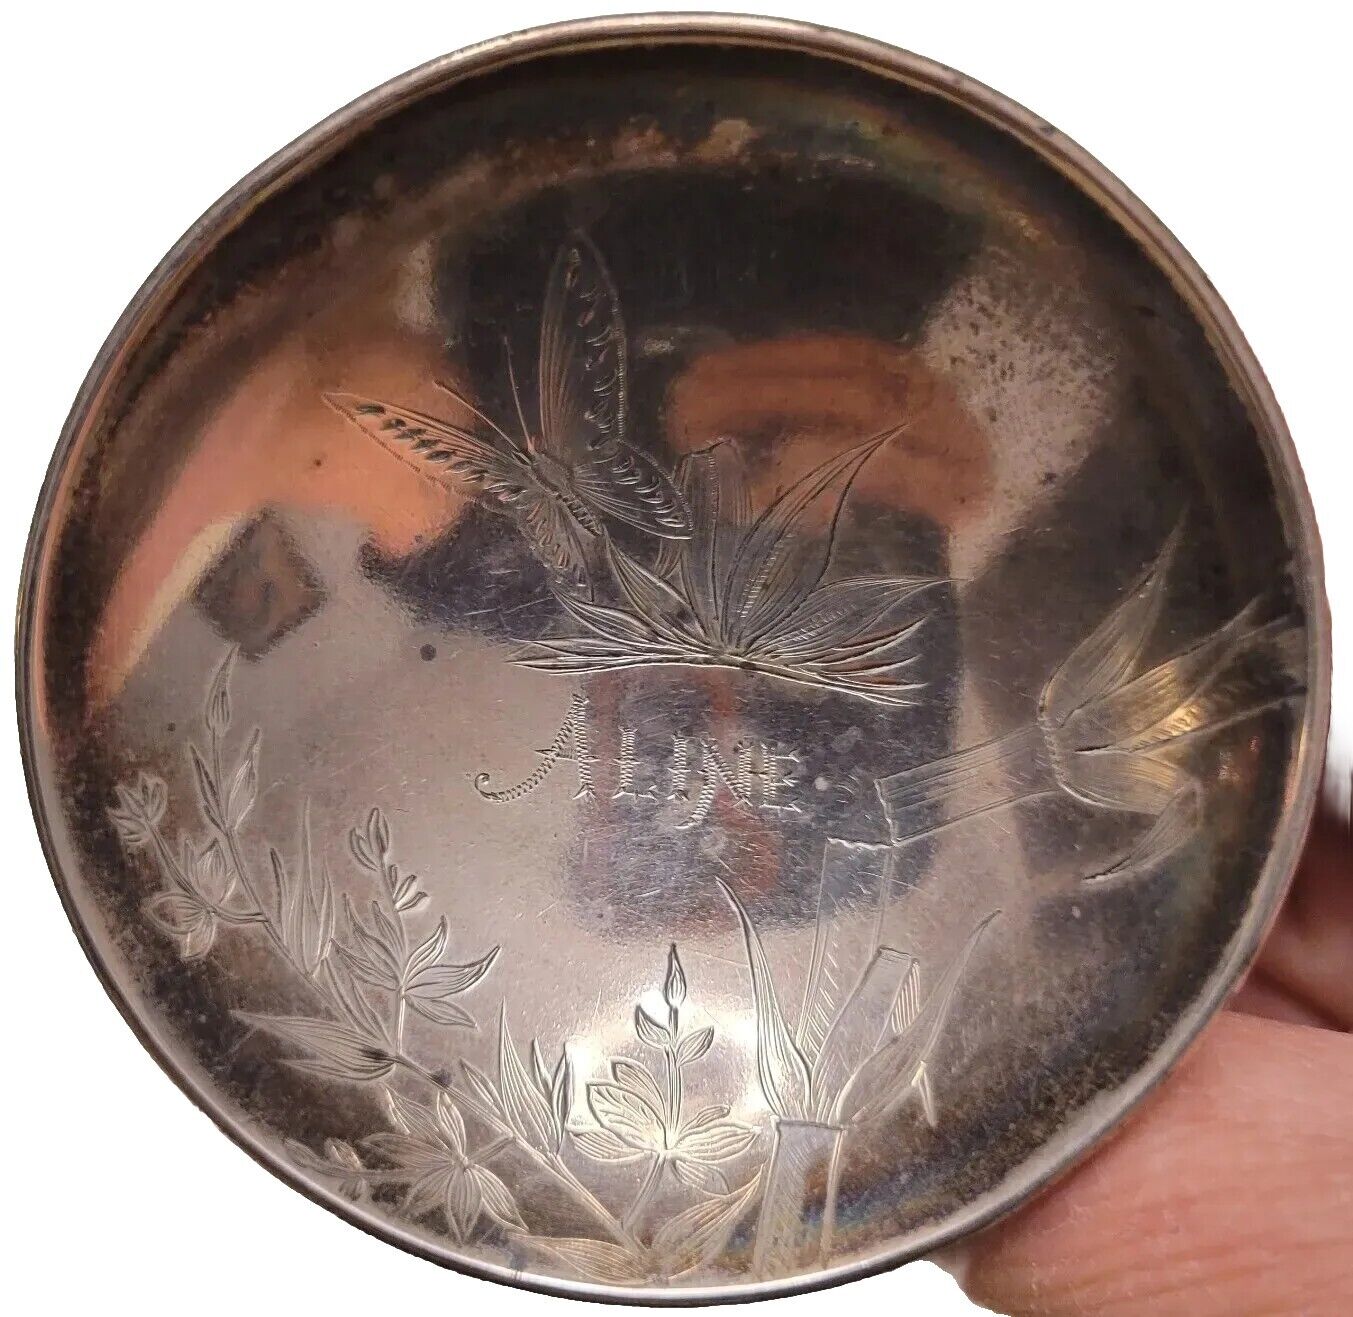 VTG Japanese Sterling Silver Sake Cup 1520N Hallmarks Hand Engraved ALINE 